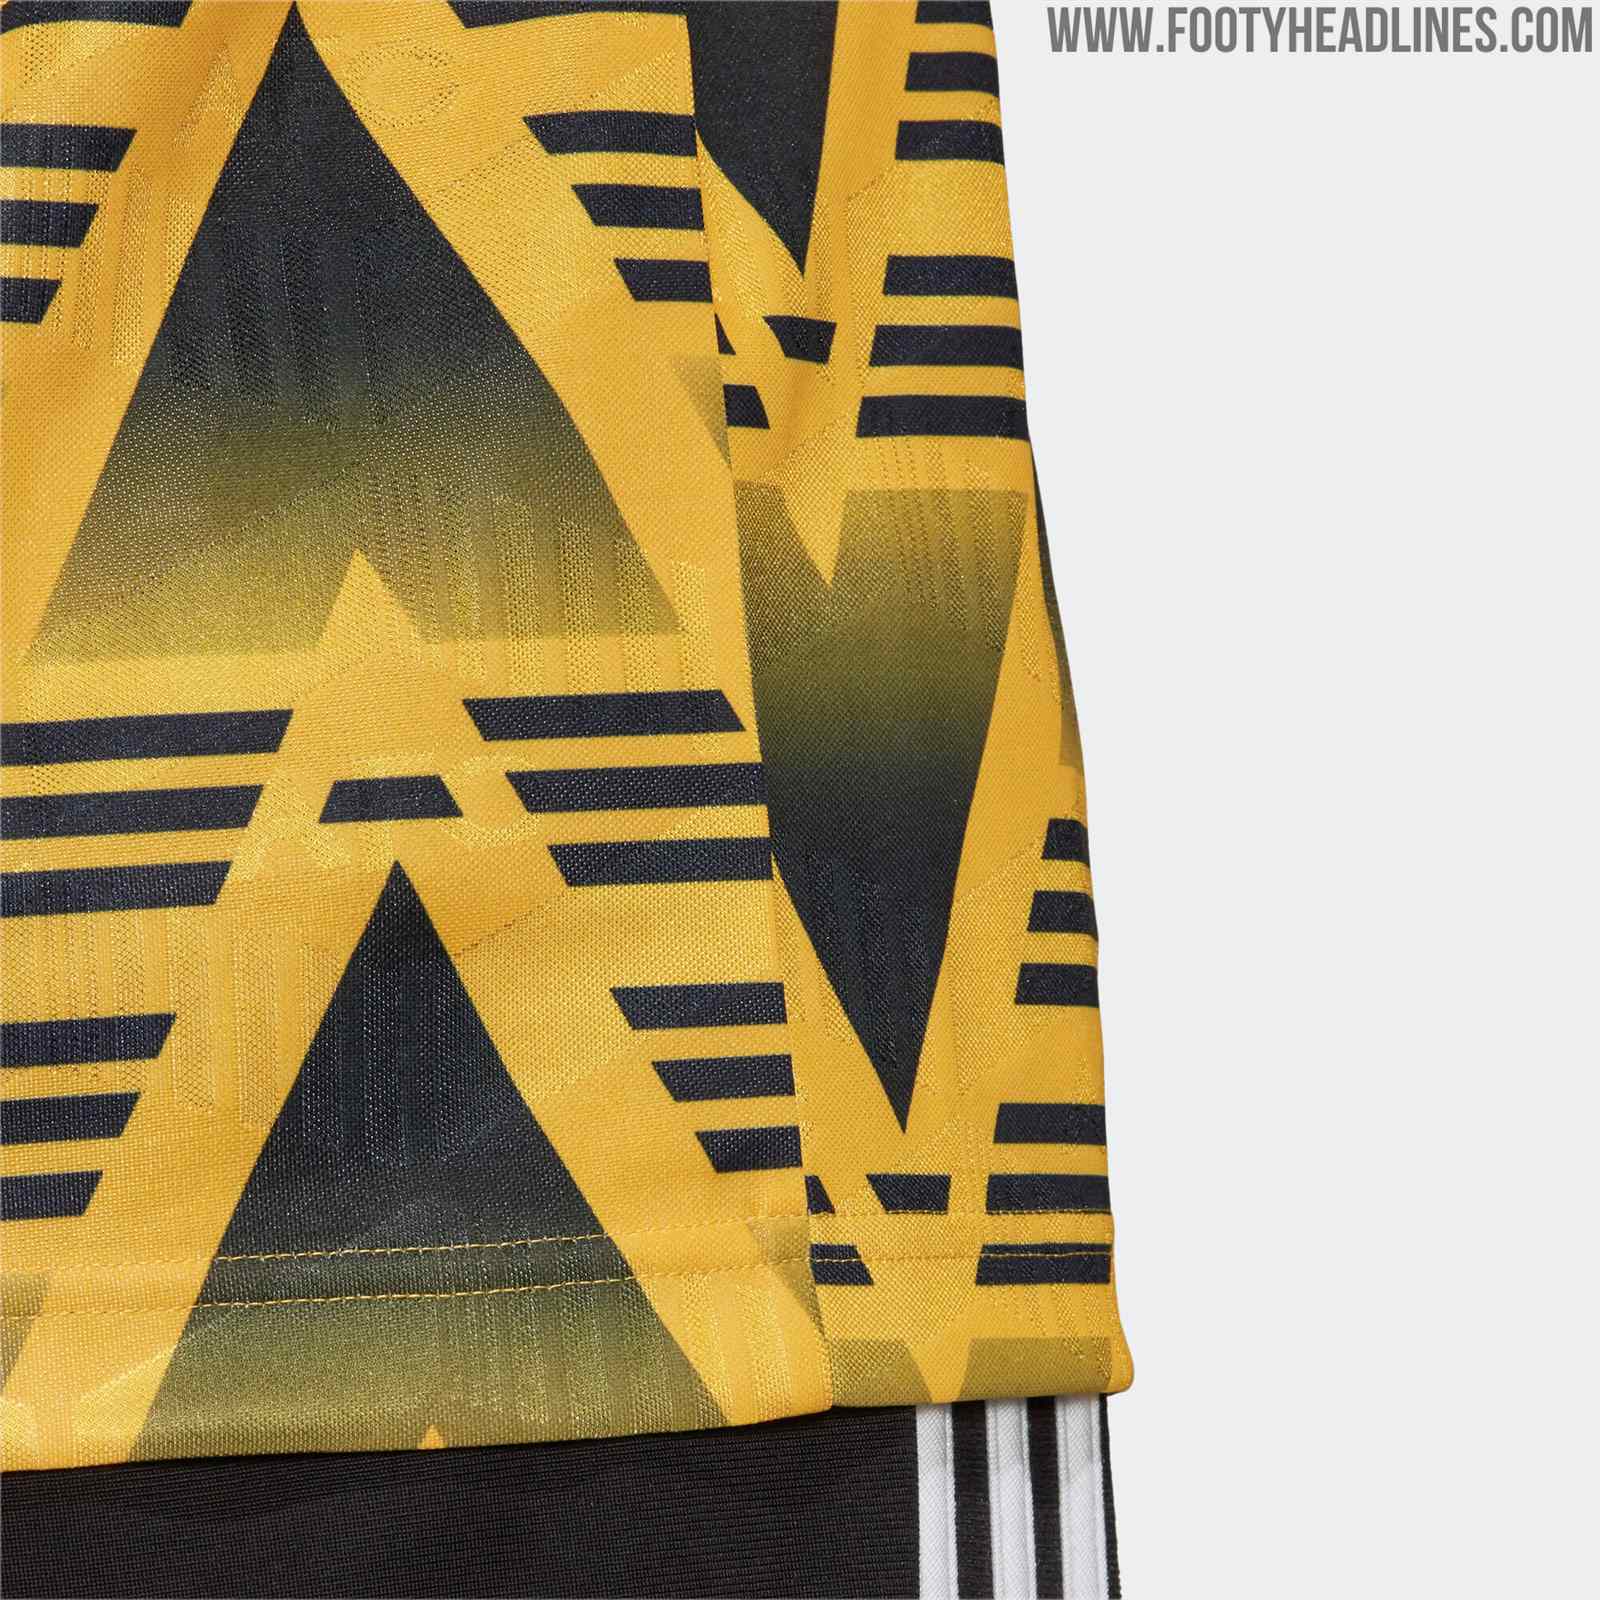 Arsenal Bruised Banana - Football Shirt Design Laces – Football Finery